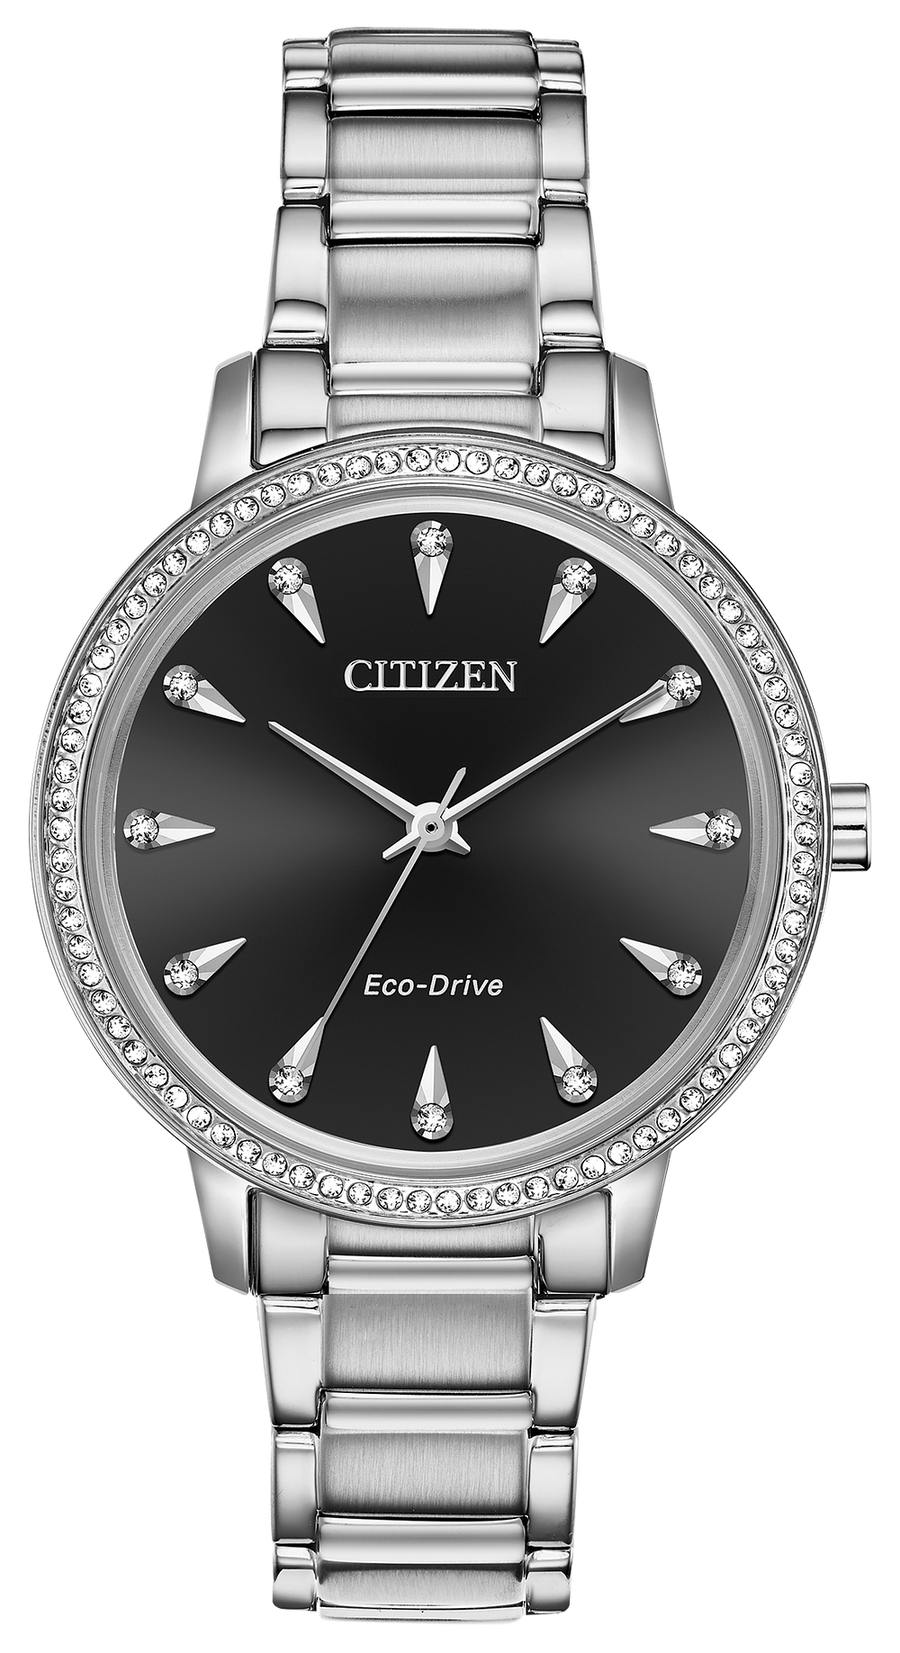 Cristal silhouette / Citizen